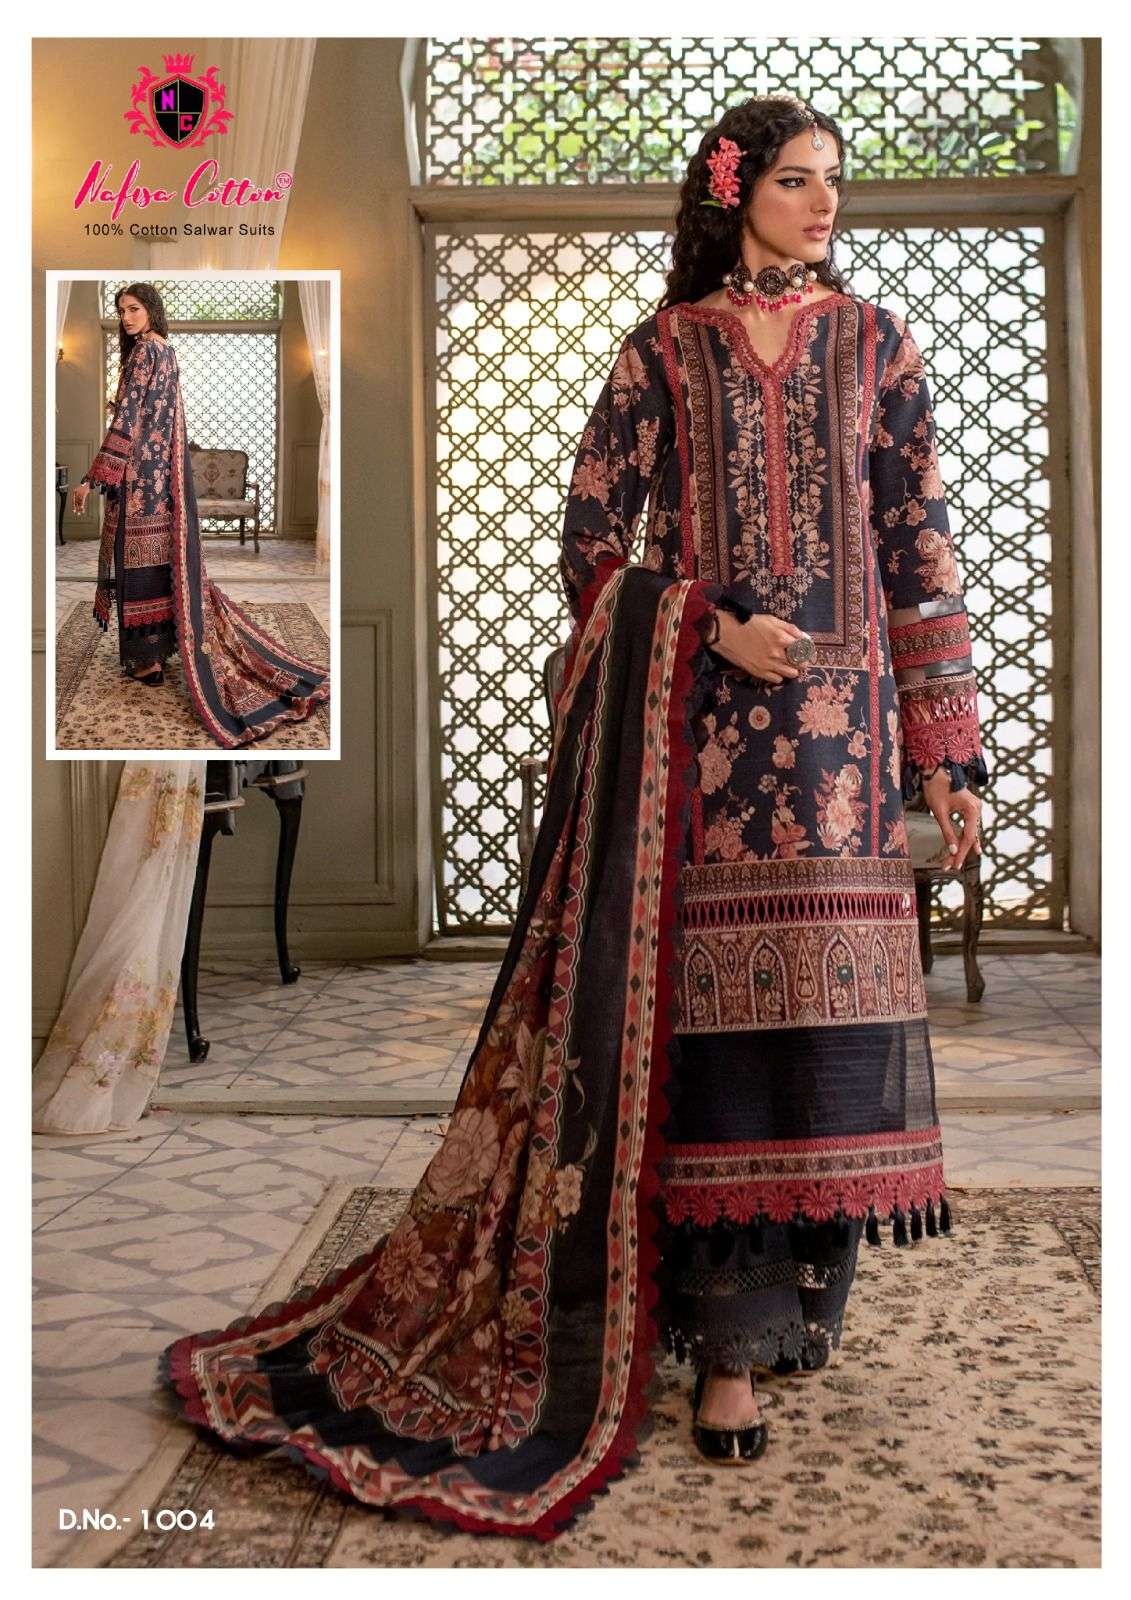 Nafisa Cotton Safina Karachi Suits Vol 2 Low Range Suits At Wholesale